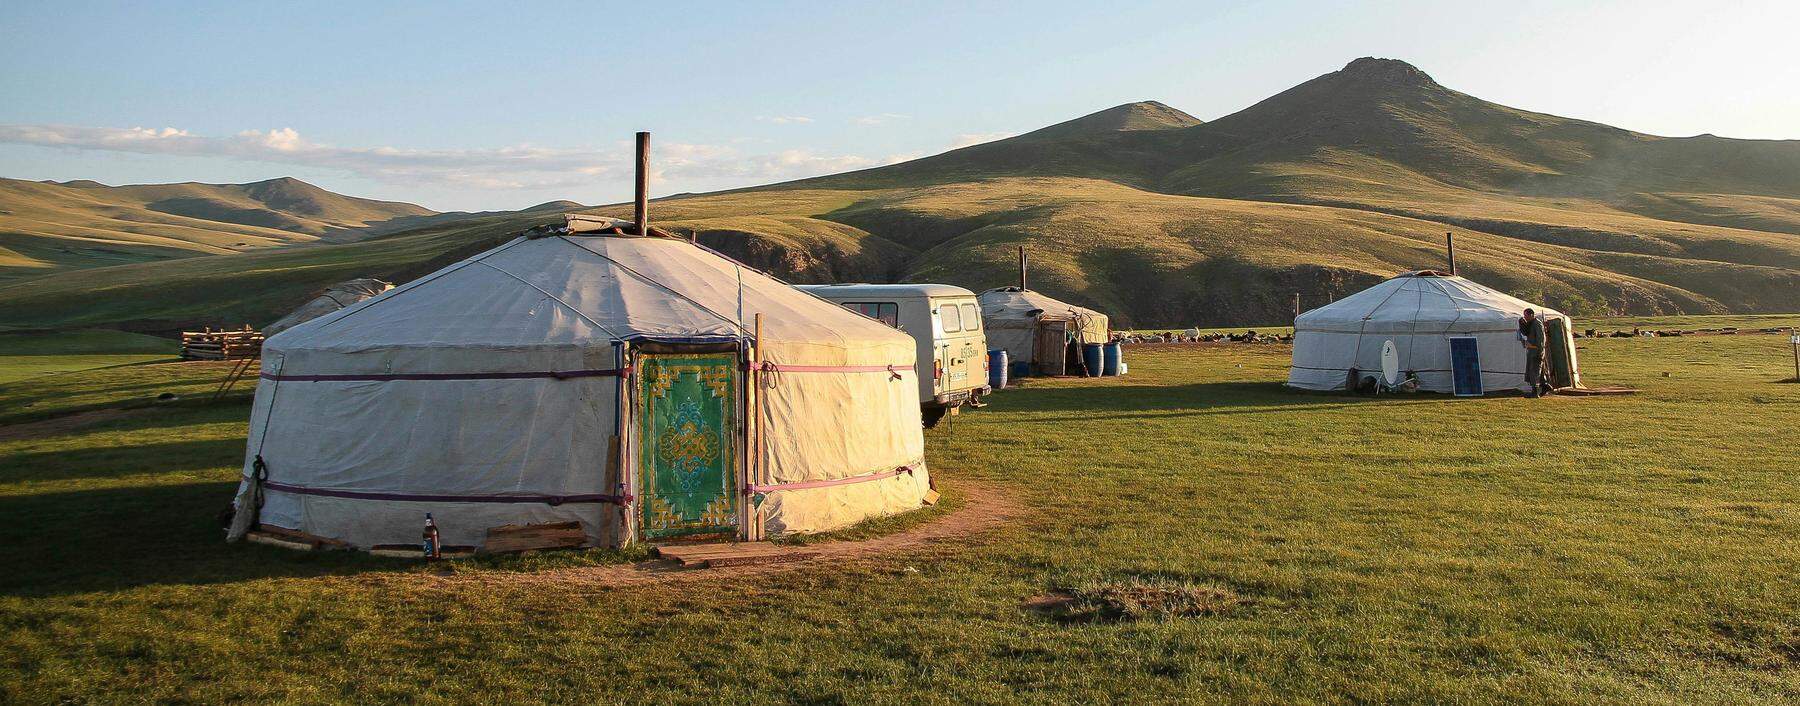 Nach wie vor leben Mongolen oft in Jurtensiedlungen. Schnell sind sie verladen und an anderer Stelle wieder installiert.